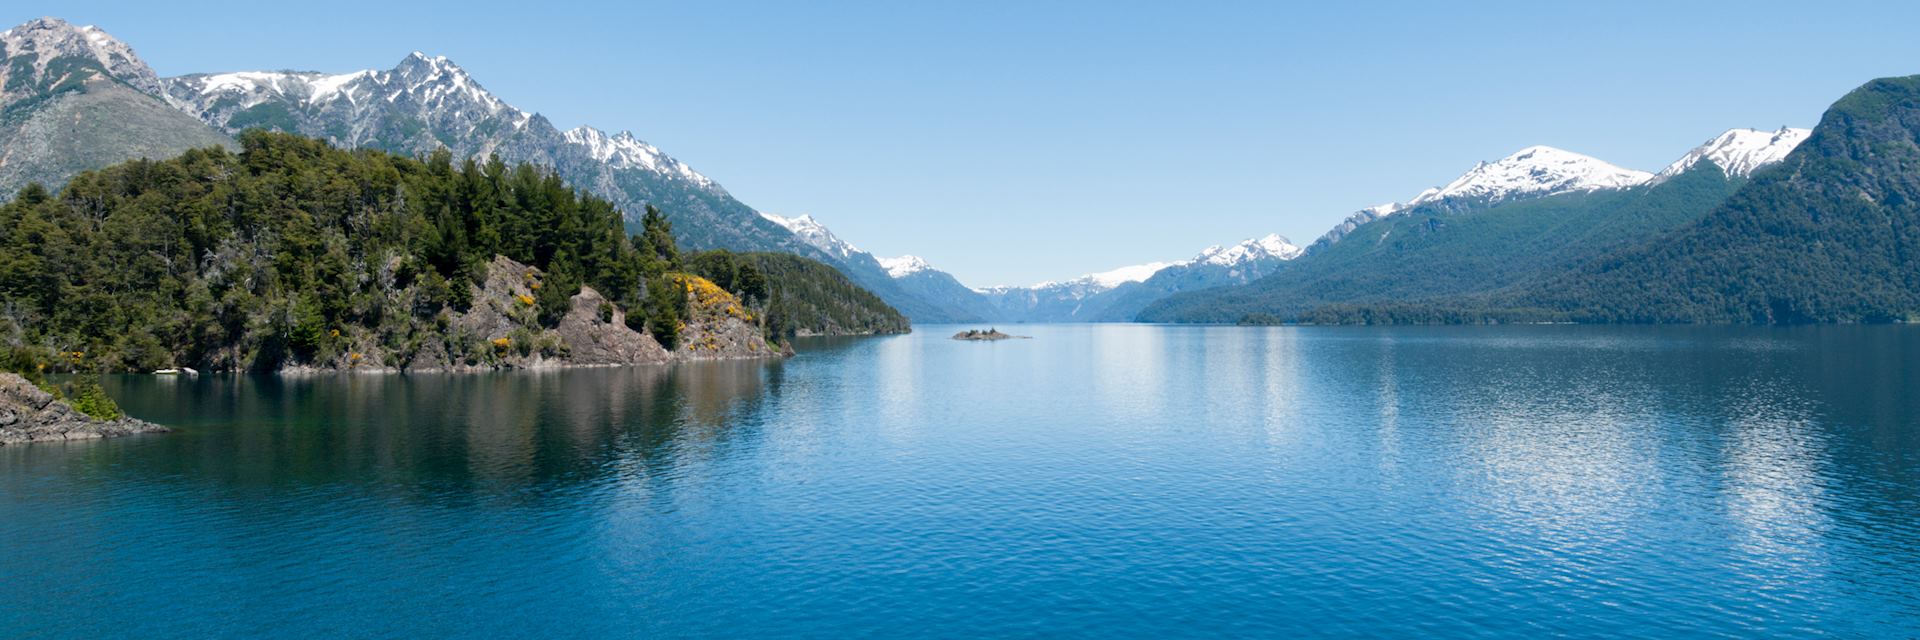 Lago Nahuel Huapi near Bariloche